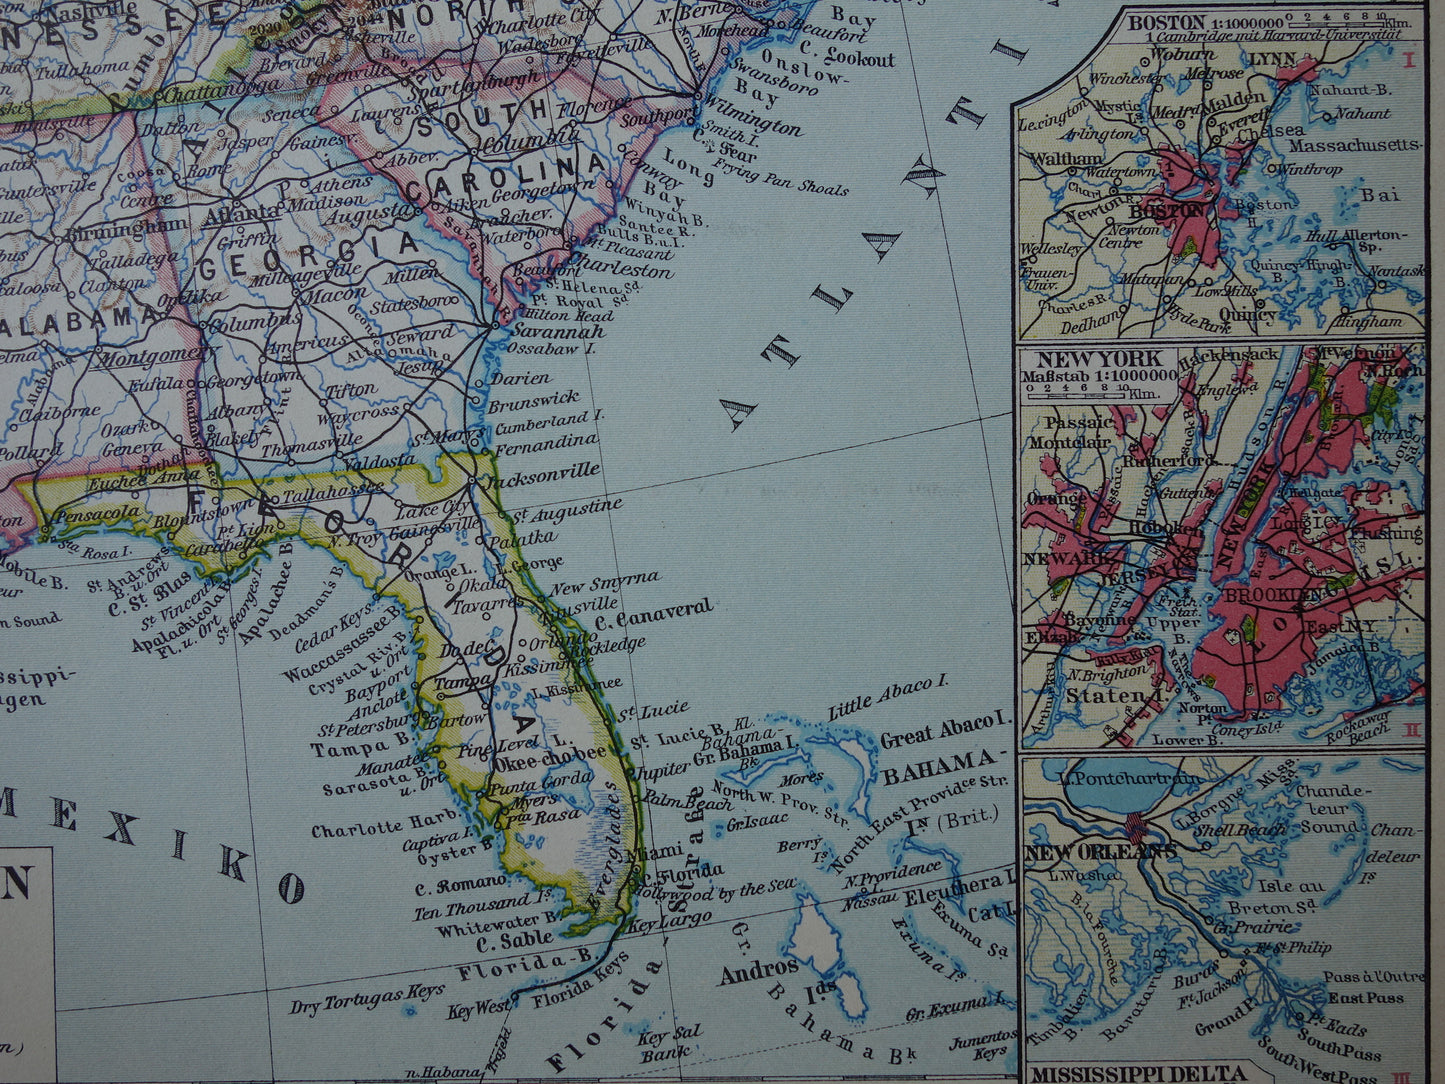 VERENIGDE STATEN set van twee kaarten uit 1928 Kleurrijke landkaart van de VS - originele vintage kaart landkaarten USA